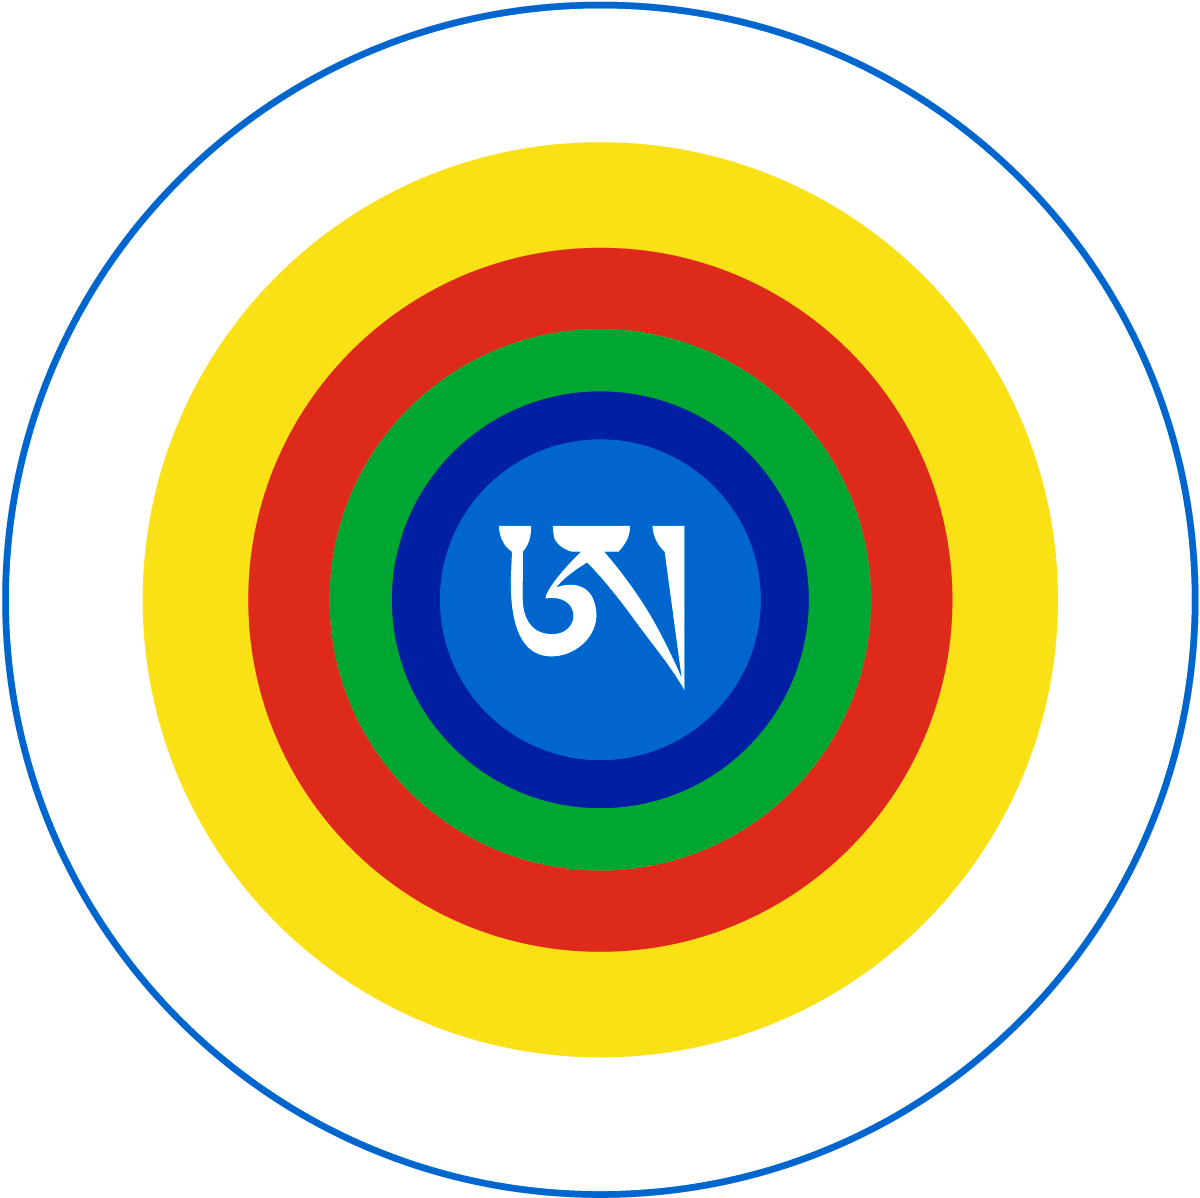 Tibetanisches A als Zeichen des Göttlichen Bewusstseins